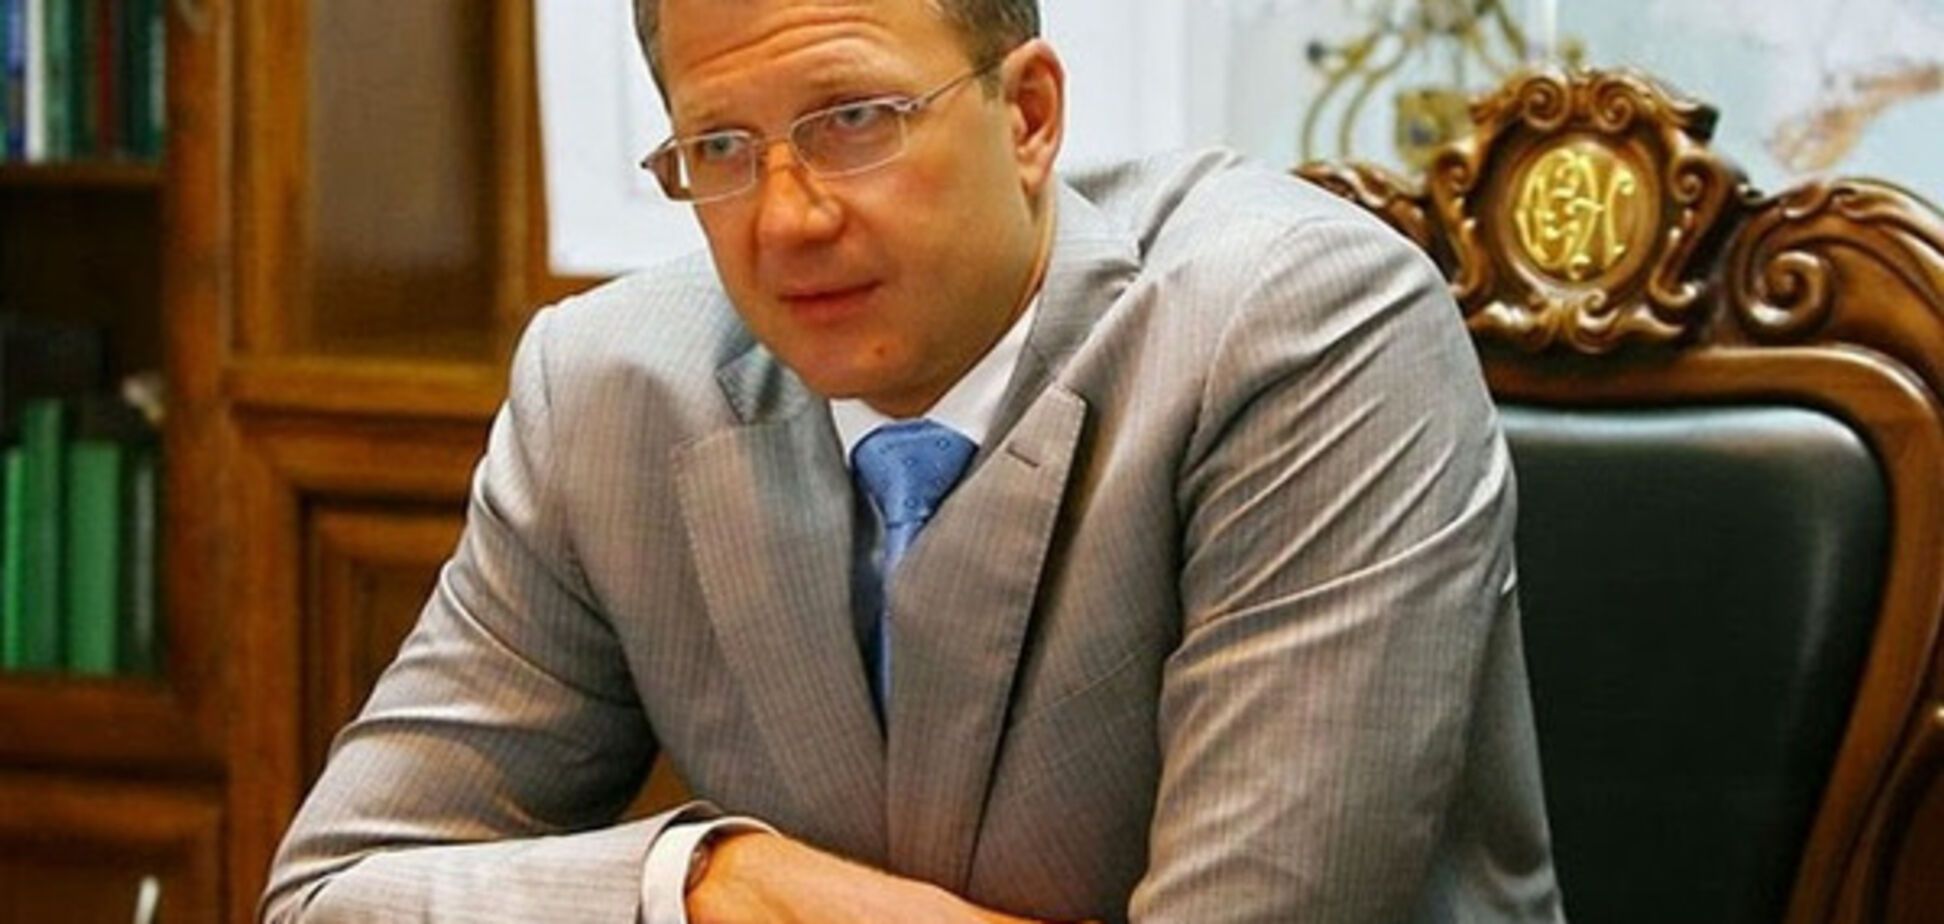 Виктор Сивец